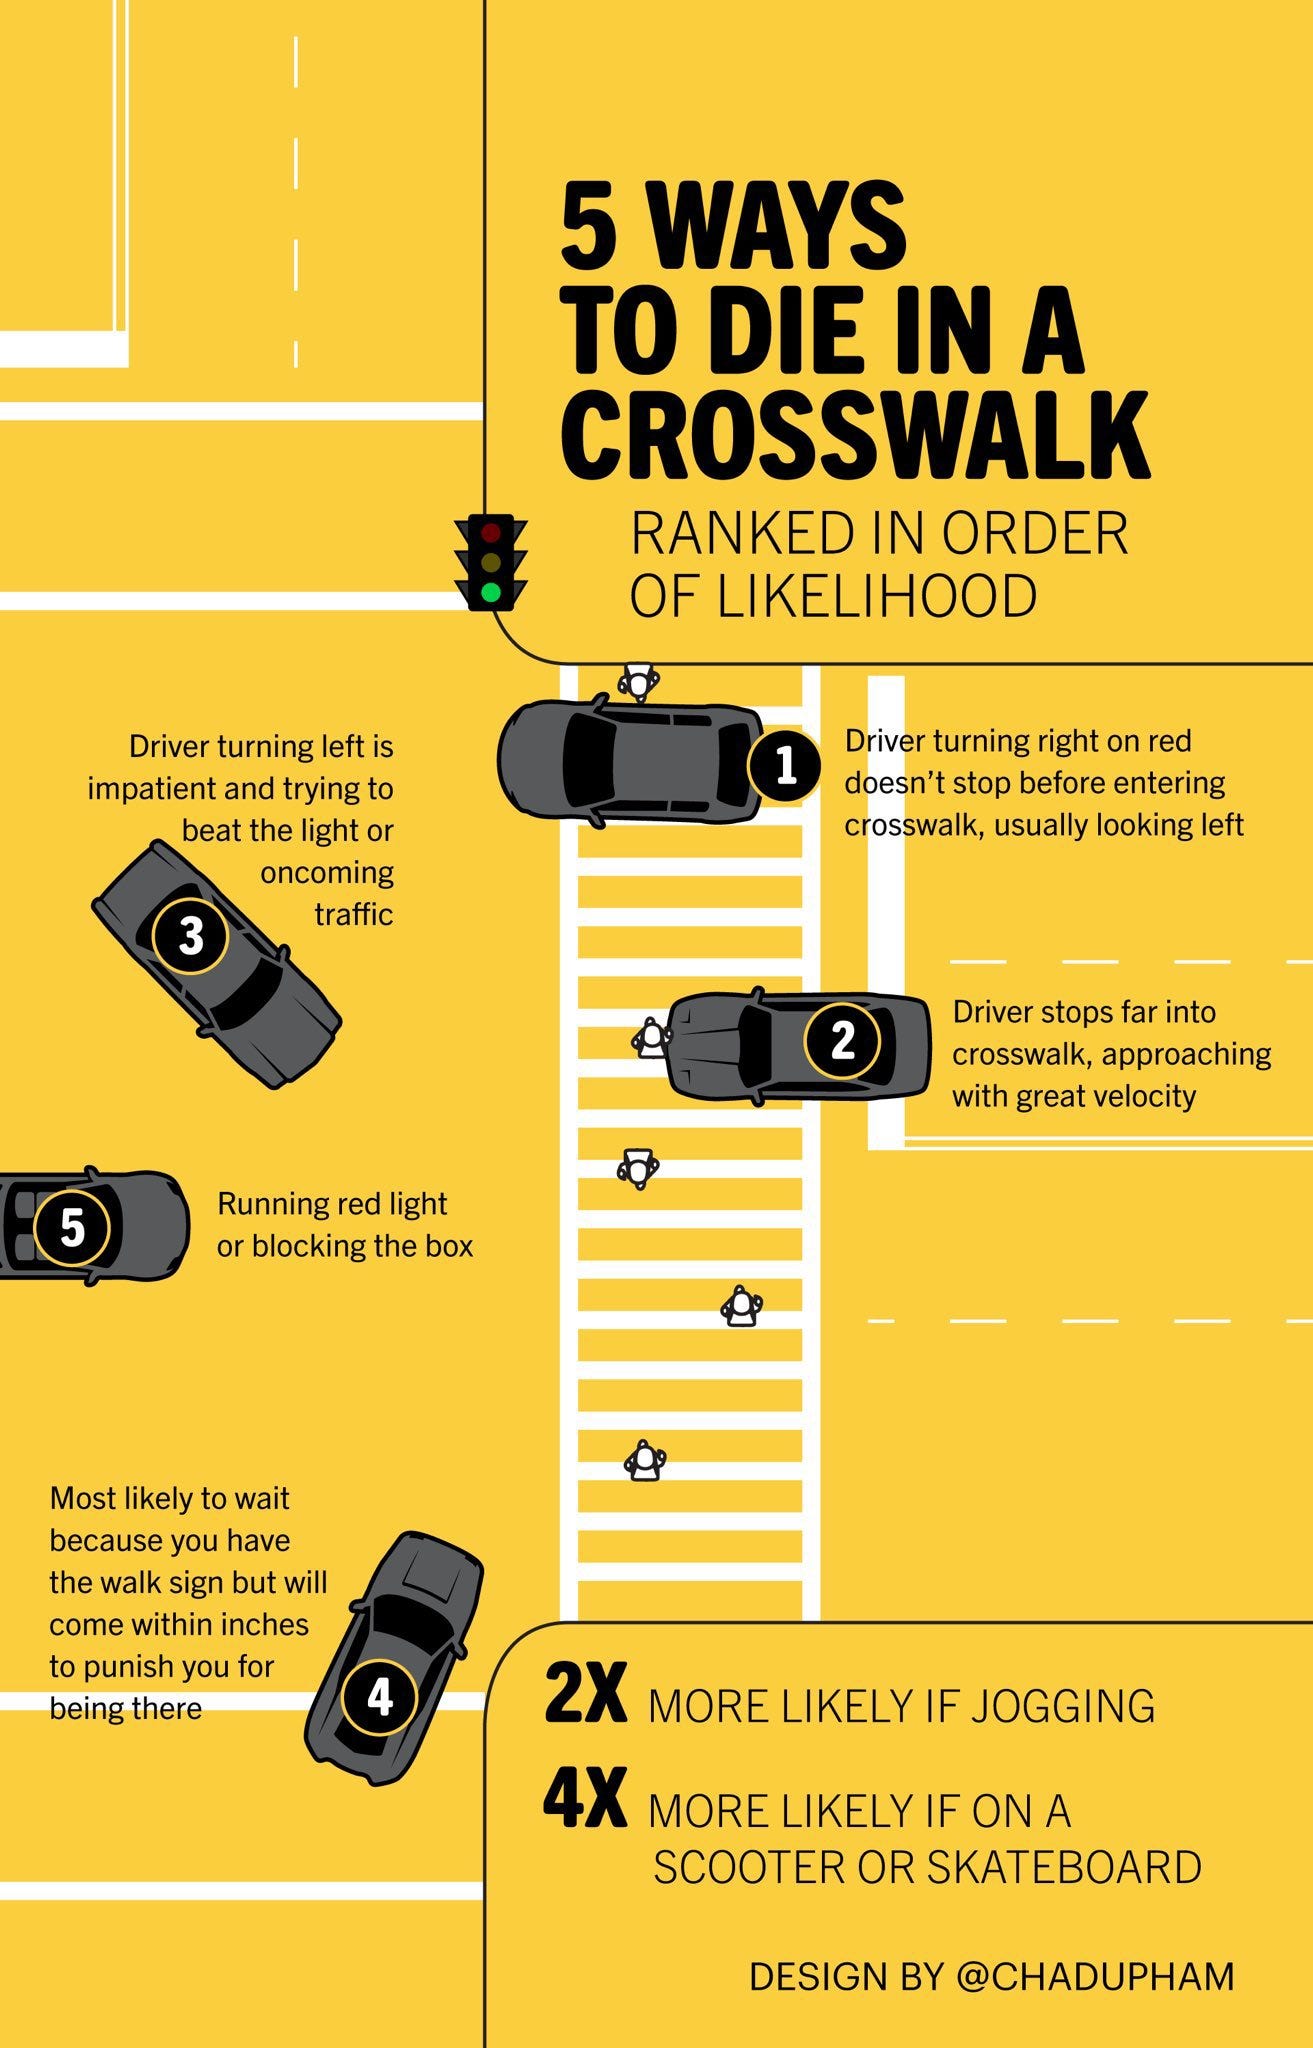 5 Ways to die in a crosswalk ranked in order of likelihood